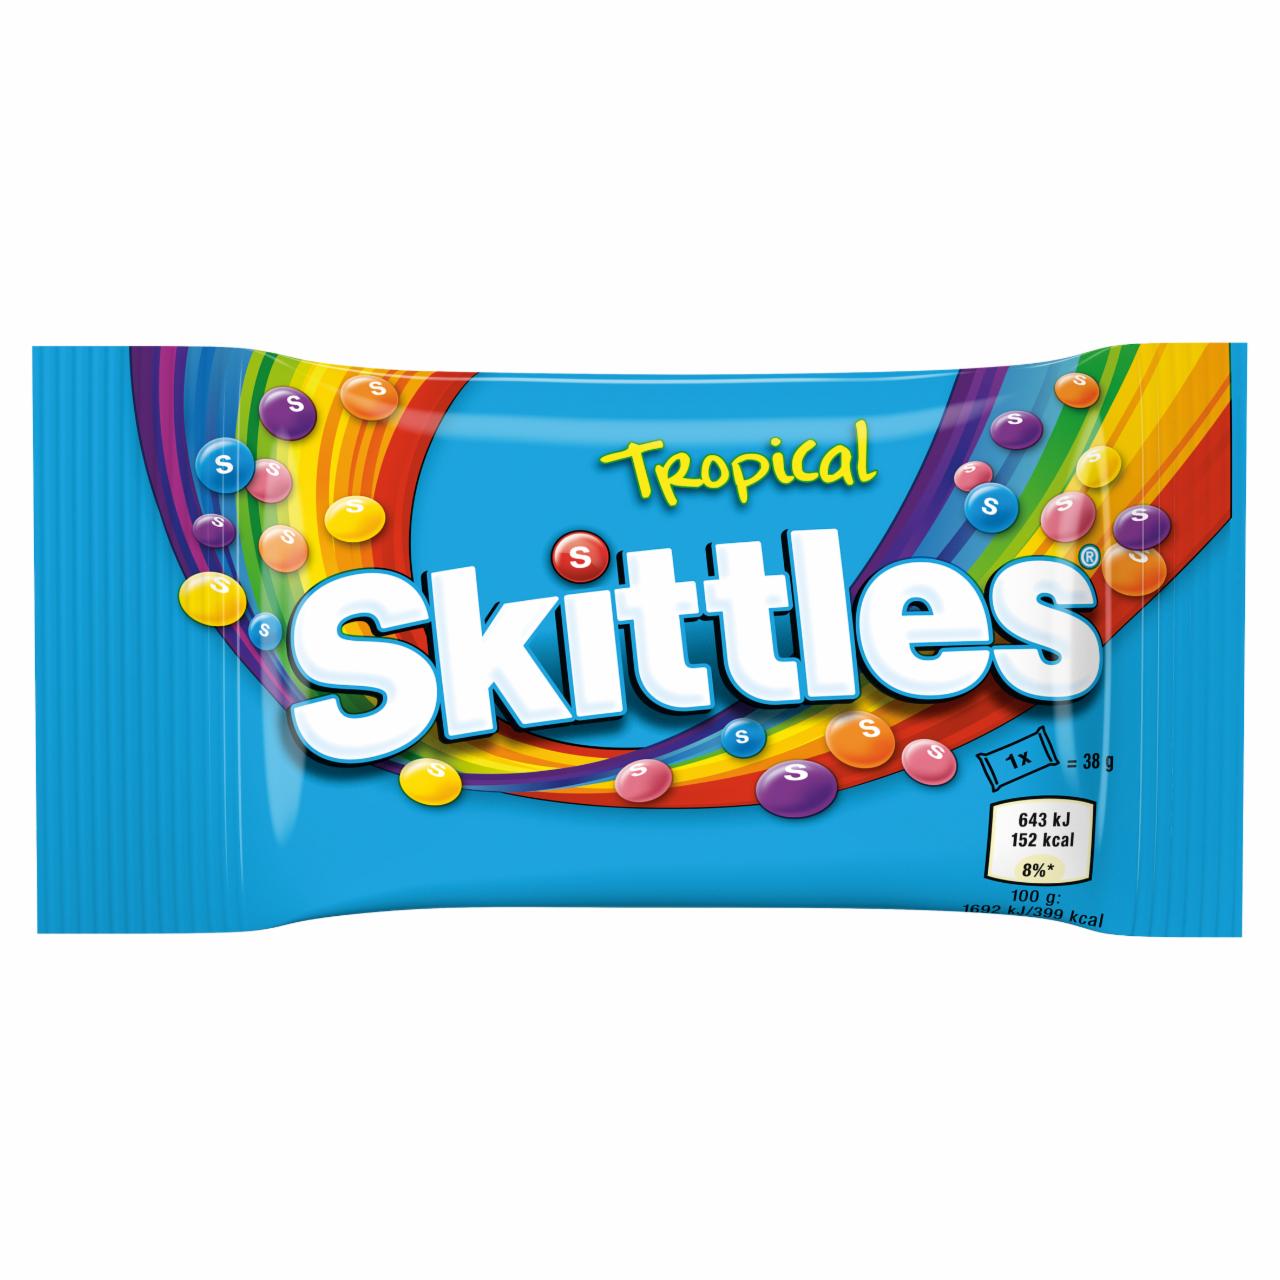 Zdjęcia - Skittles Tropical Cukierki do żucia 38 g